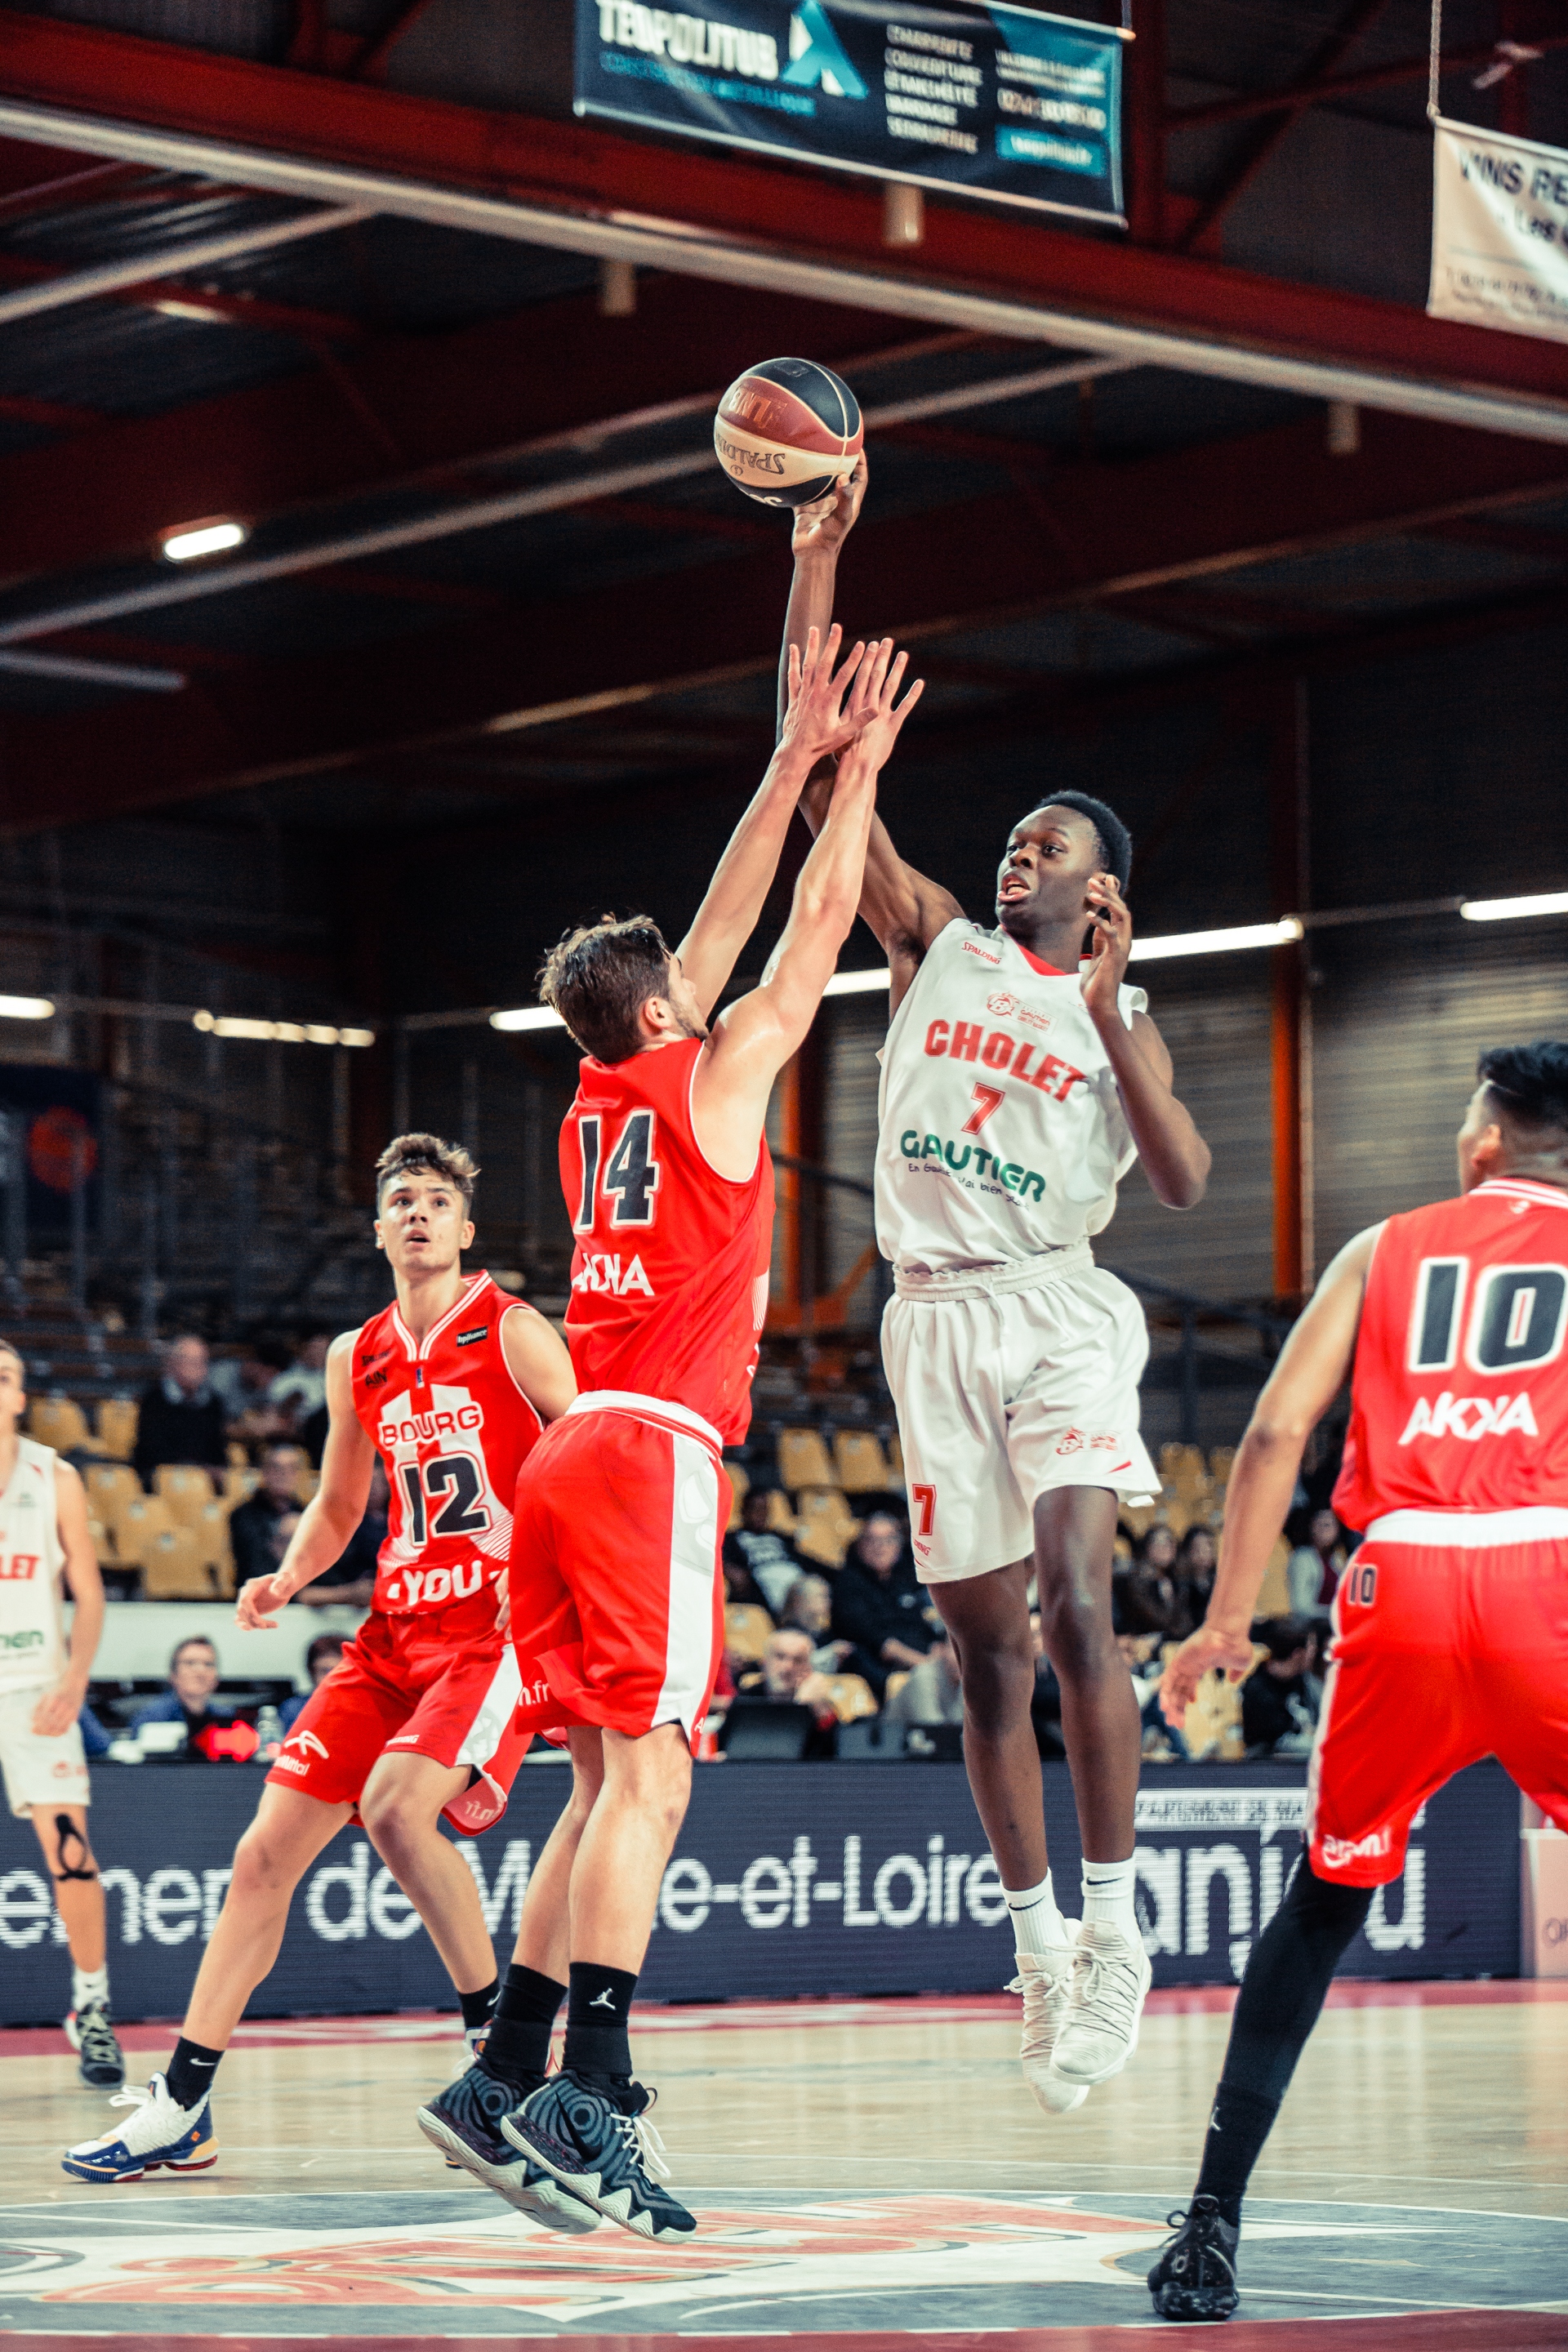 Académie Gautier Cholet Basket - Bourg en Bresse (09/02/2019)